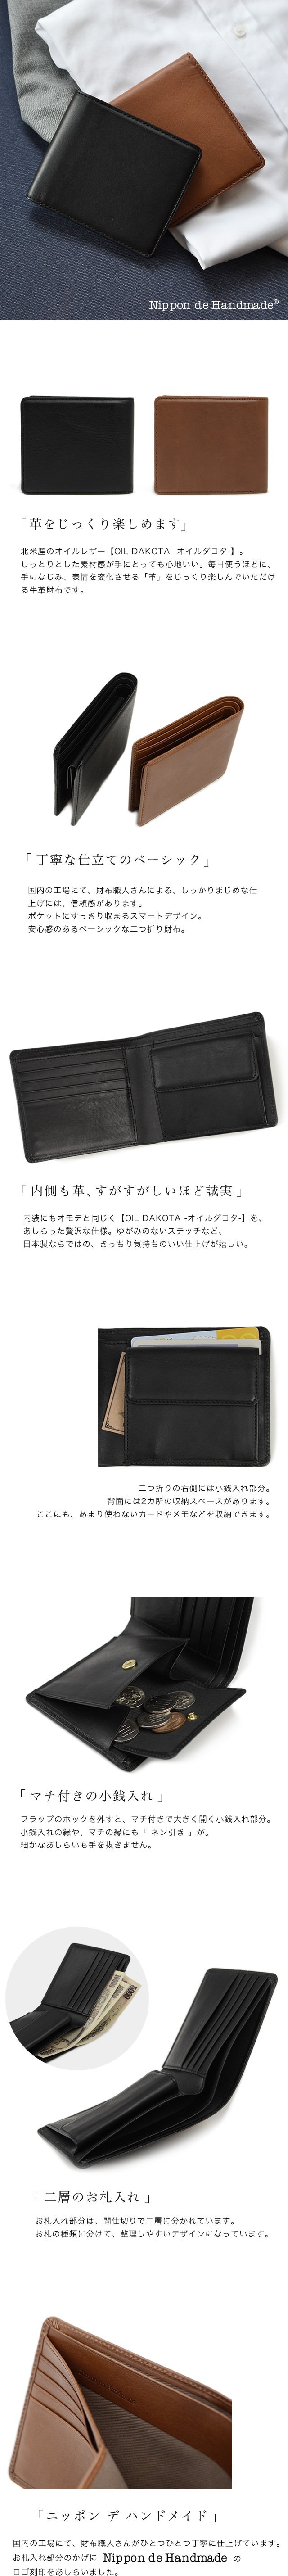 [NdH] オイルダコタ 二つ折り財布-ベルト専門店ベルトラボ